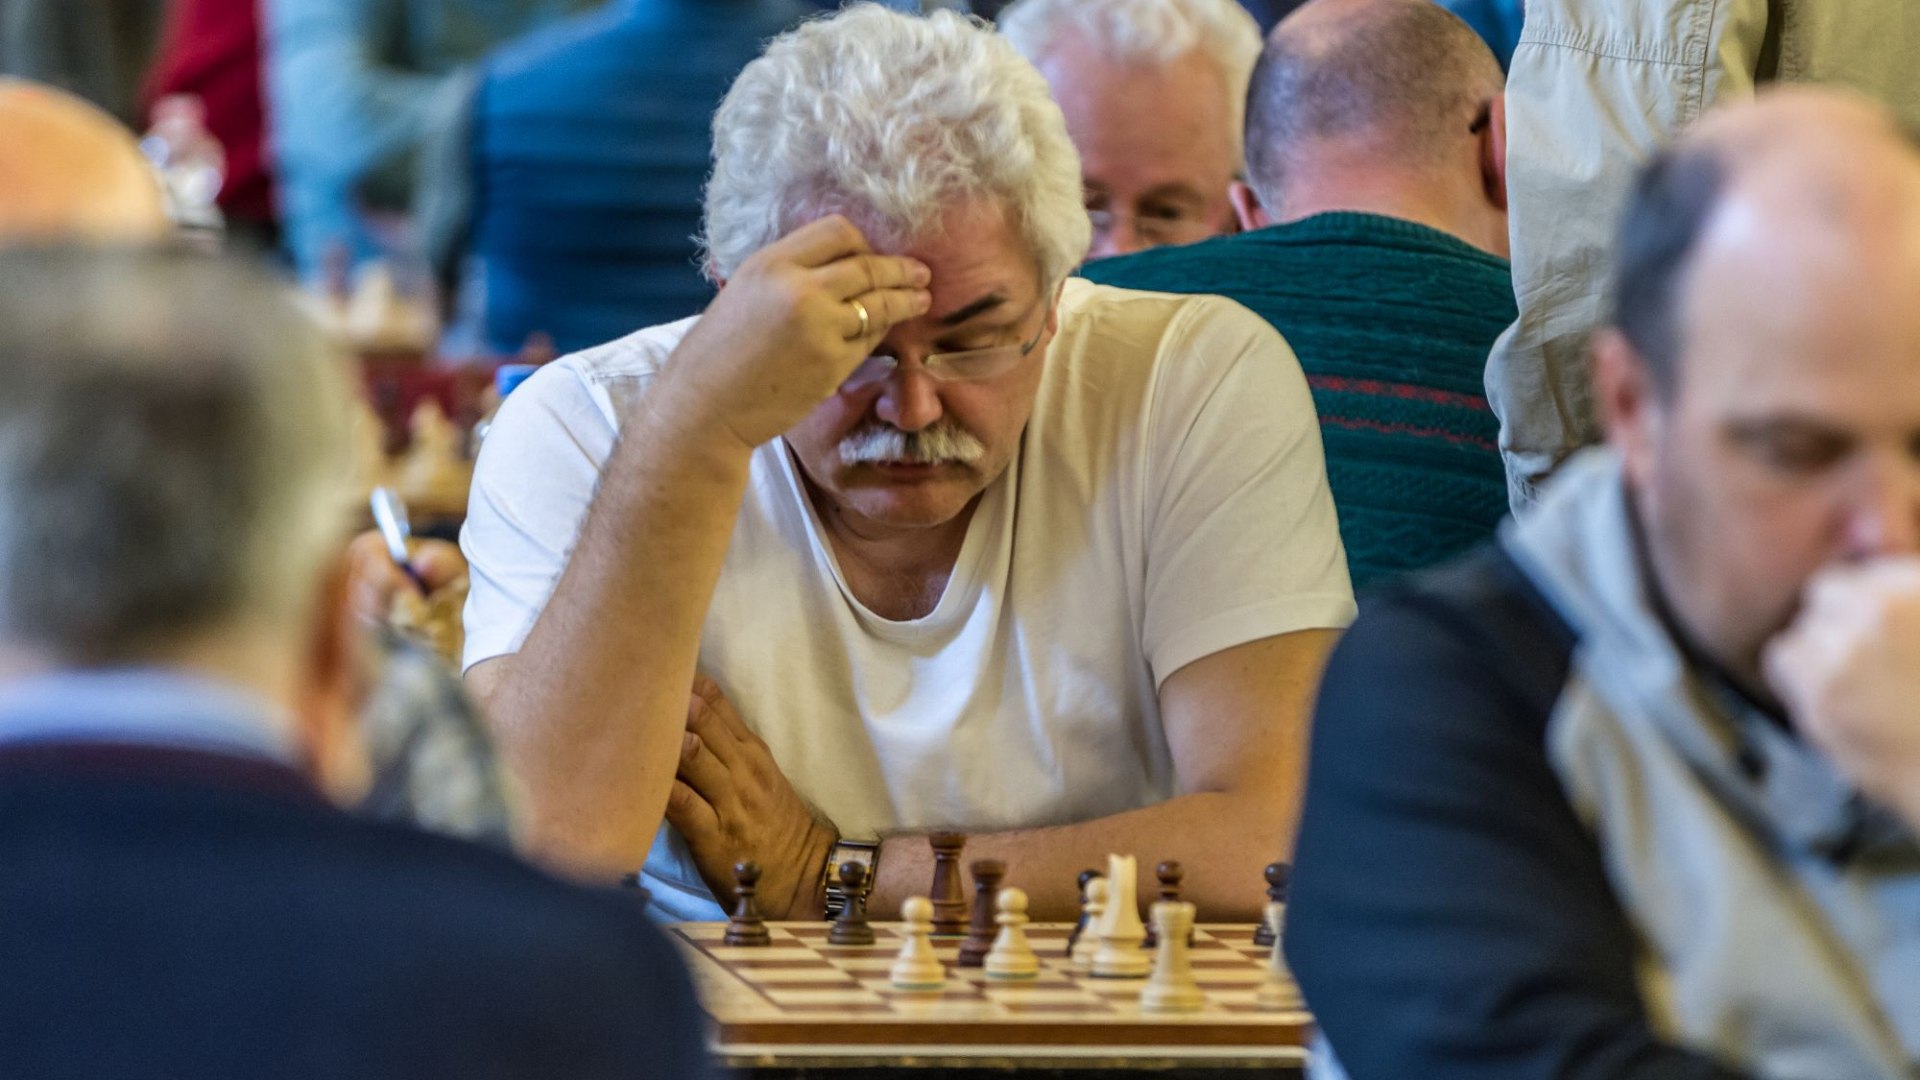 Internationaler Senioren-Cup im Schach, © Der Tegernsee (Thomas Müller)